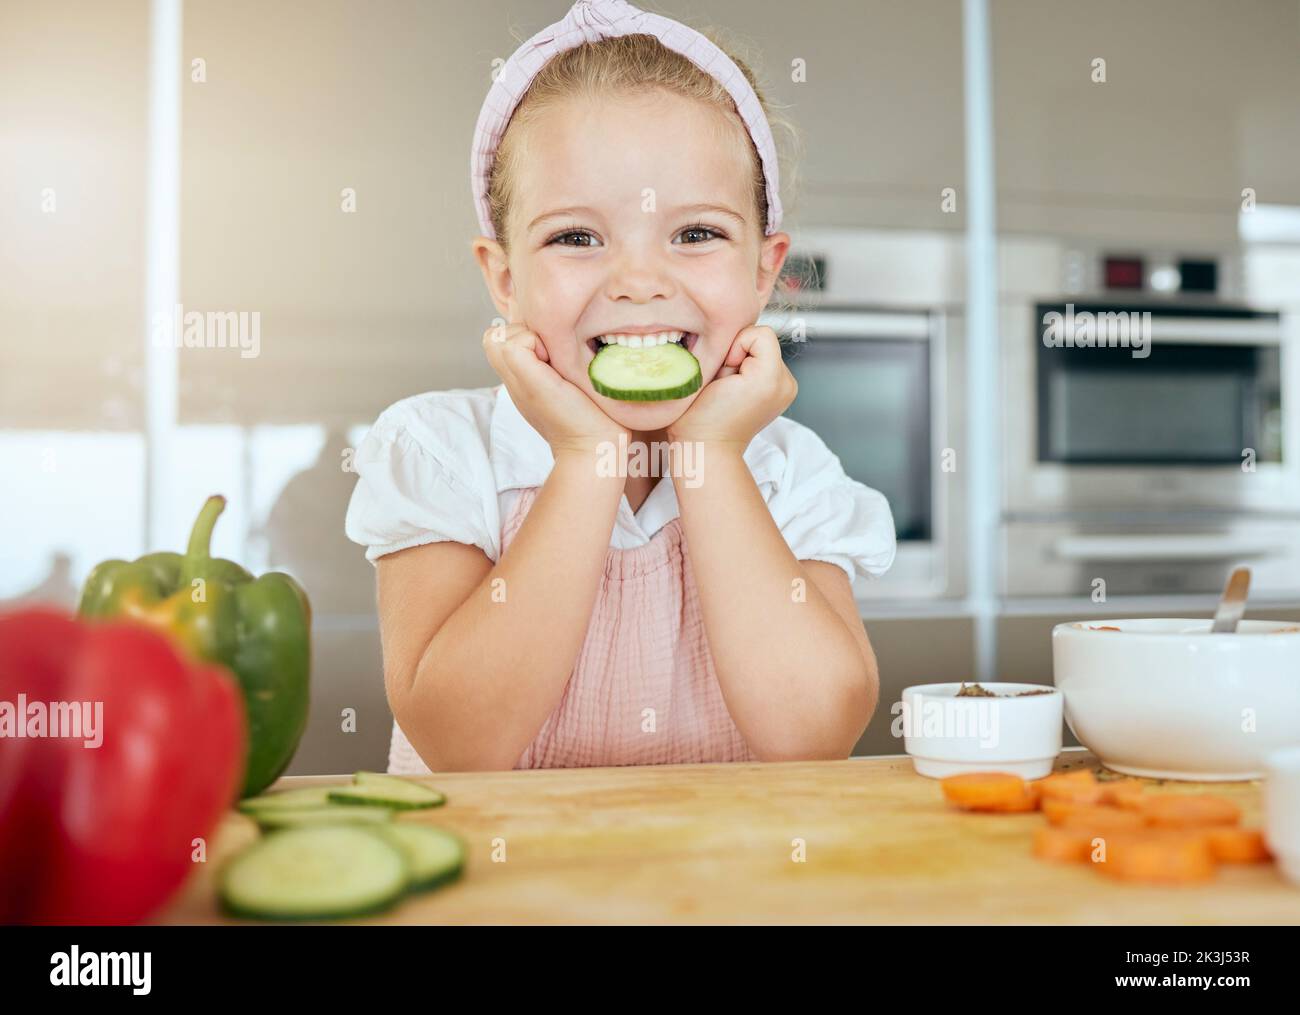 Nettes Mädchen mit einem Lächeln essen Gurke, kocht gesunde grüne Salat für eine Mahlzeit und lernen über die Ernährung Vorteile. Frisches Obst, Bio-Gemüse Stockfoto